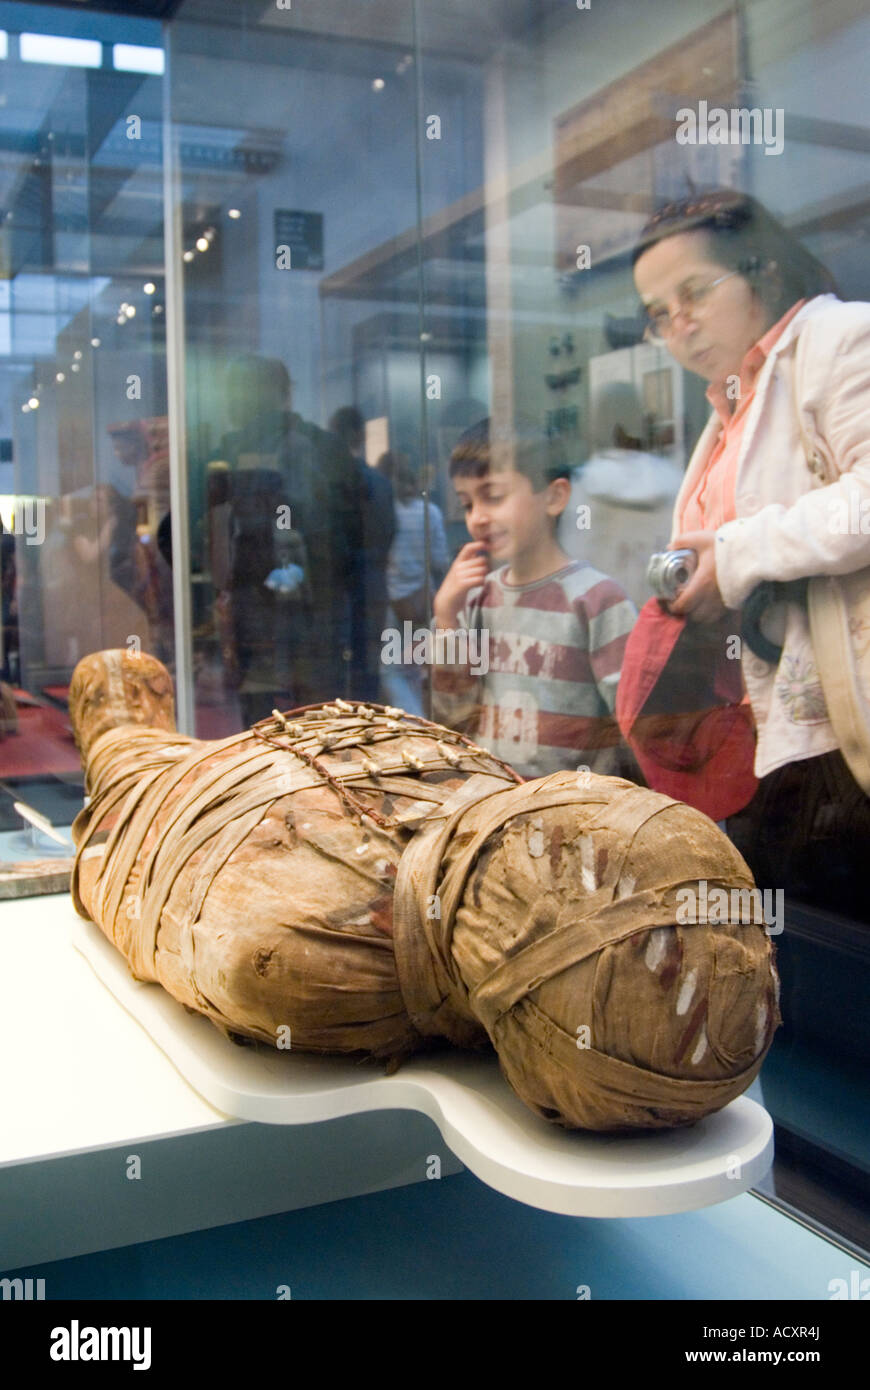 Les visiteurs à la recherche d'une momie égyptienne antique au British Museum, Londres, Angleterre, Royaume-Uni Banque D'Images